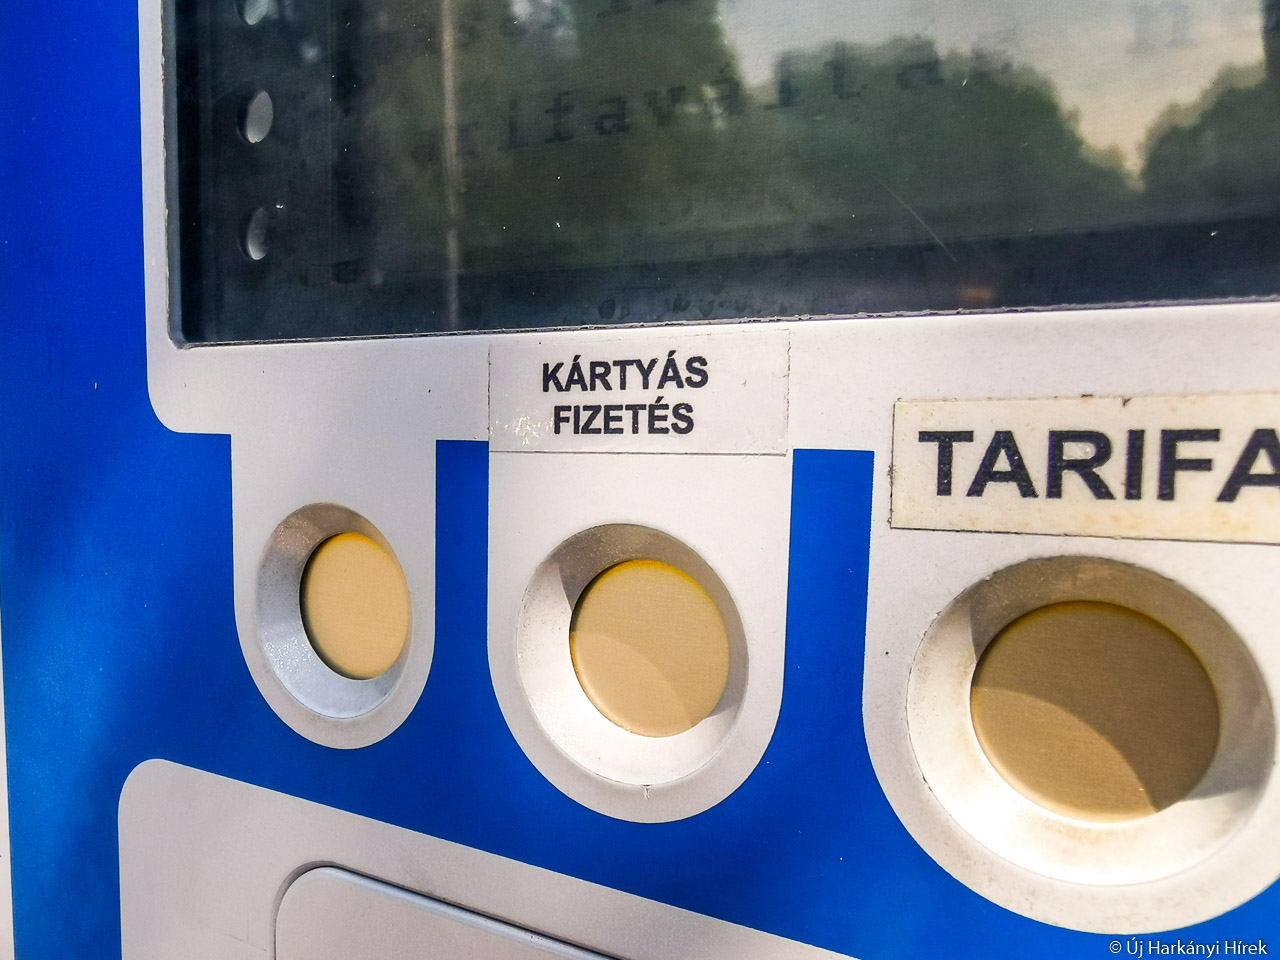 Kártyás fizetés előválasztó gombja a harkányi parkolóautomatán